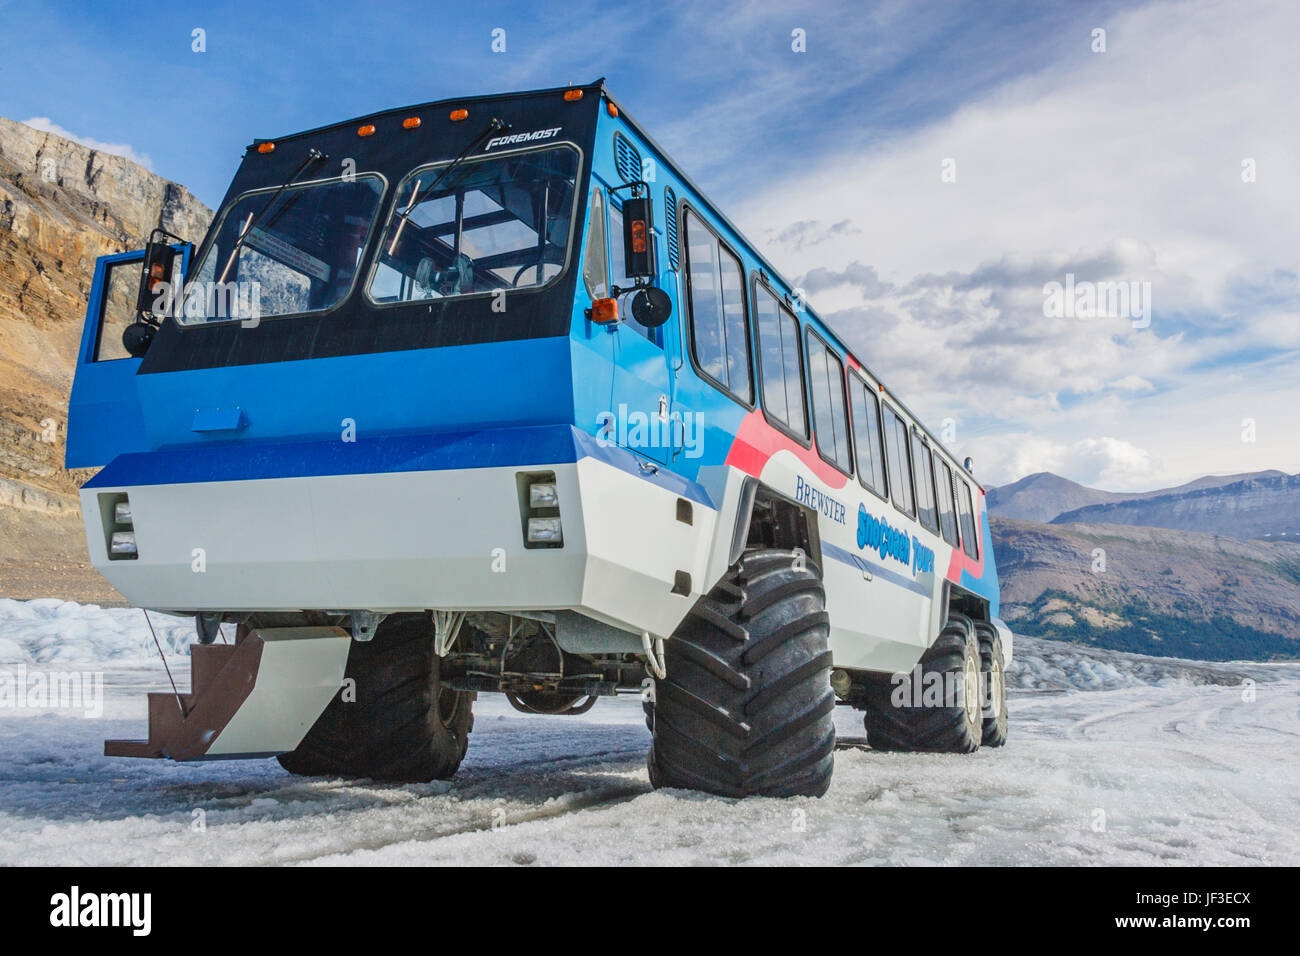 Coach-Tour-Bus am Athabasca Gletscher Schnee. Der Athabasca ist der am meisten besuchten Gletscher auf dem nordamerikanischen Kontinent. Stockfoto